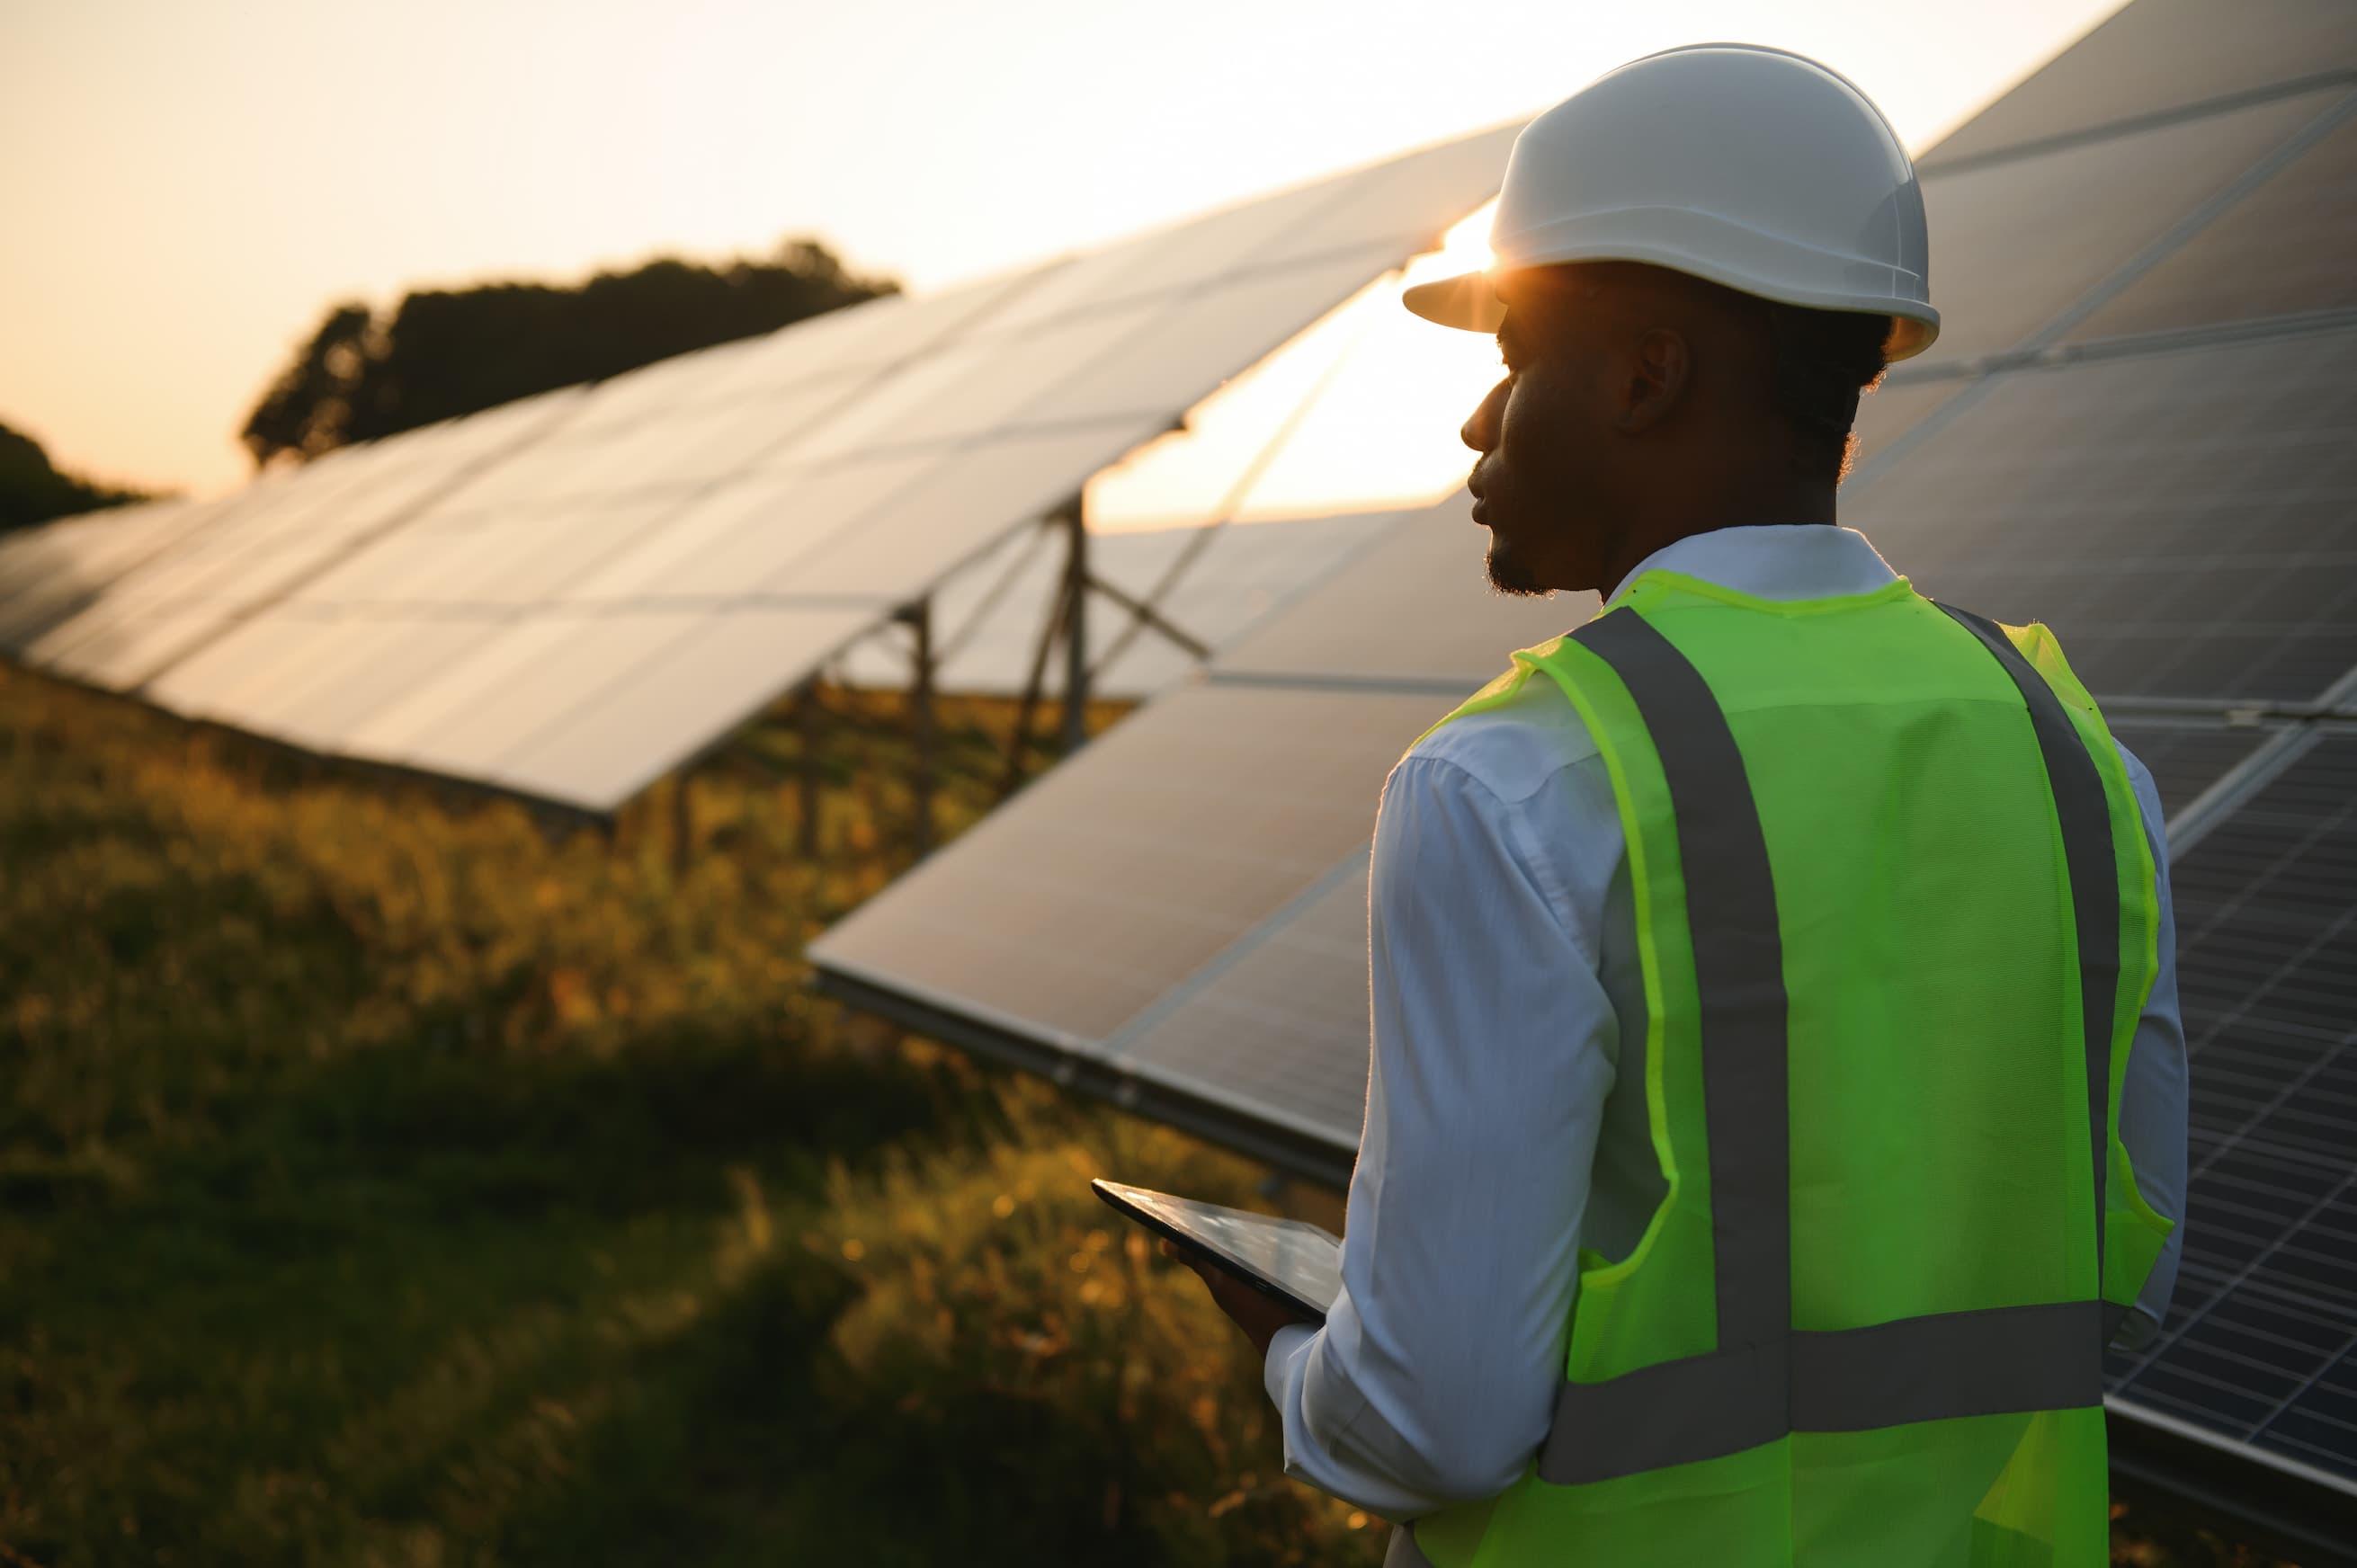 Sebrae Minas - O futuro dos pequenos negócios com a energia solar